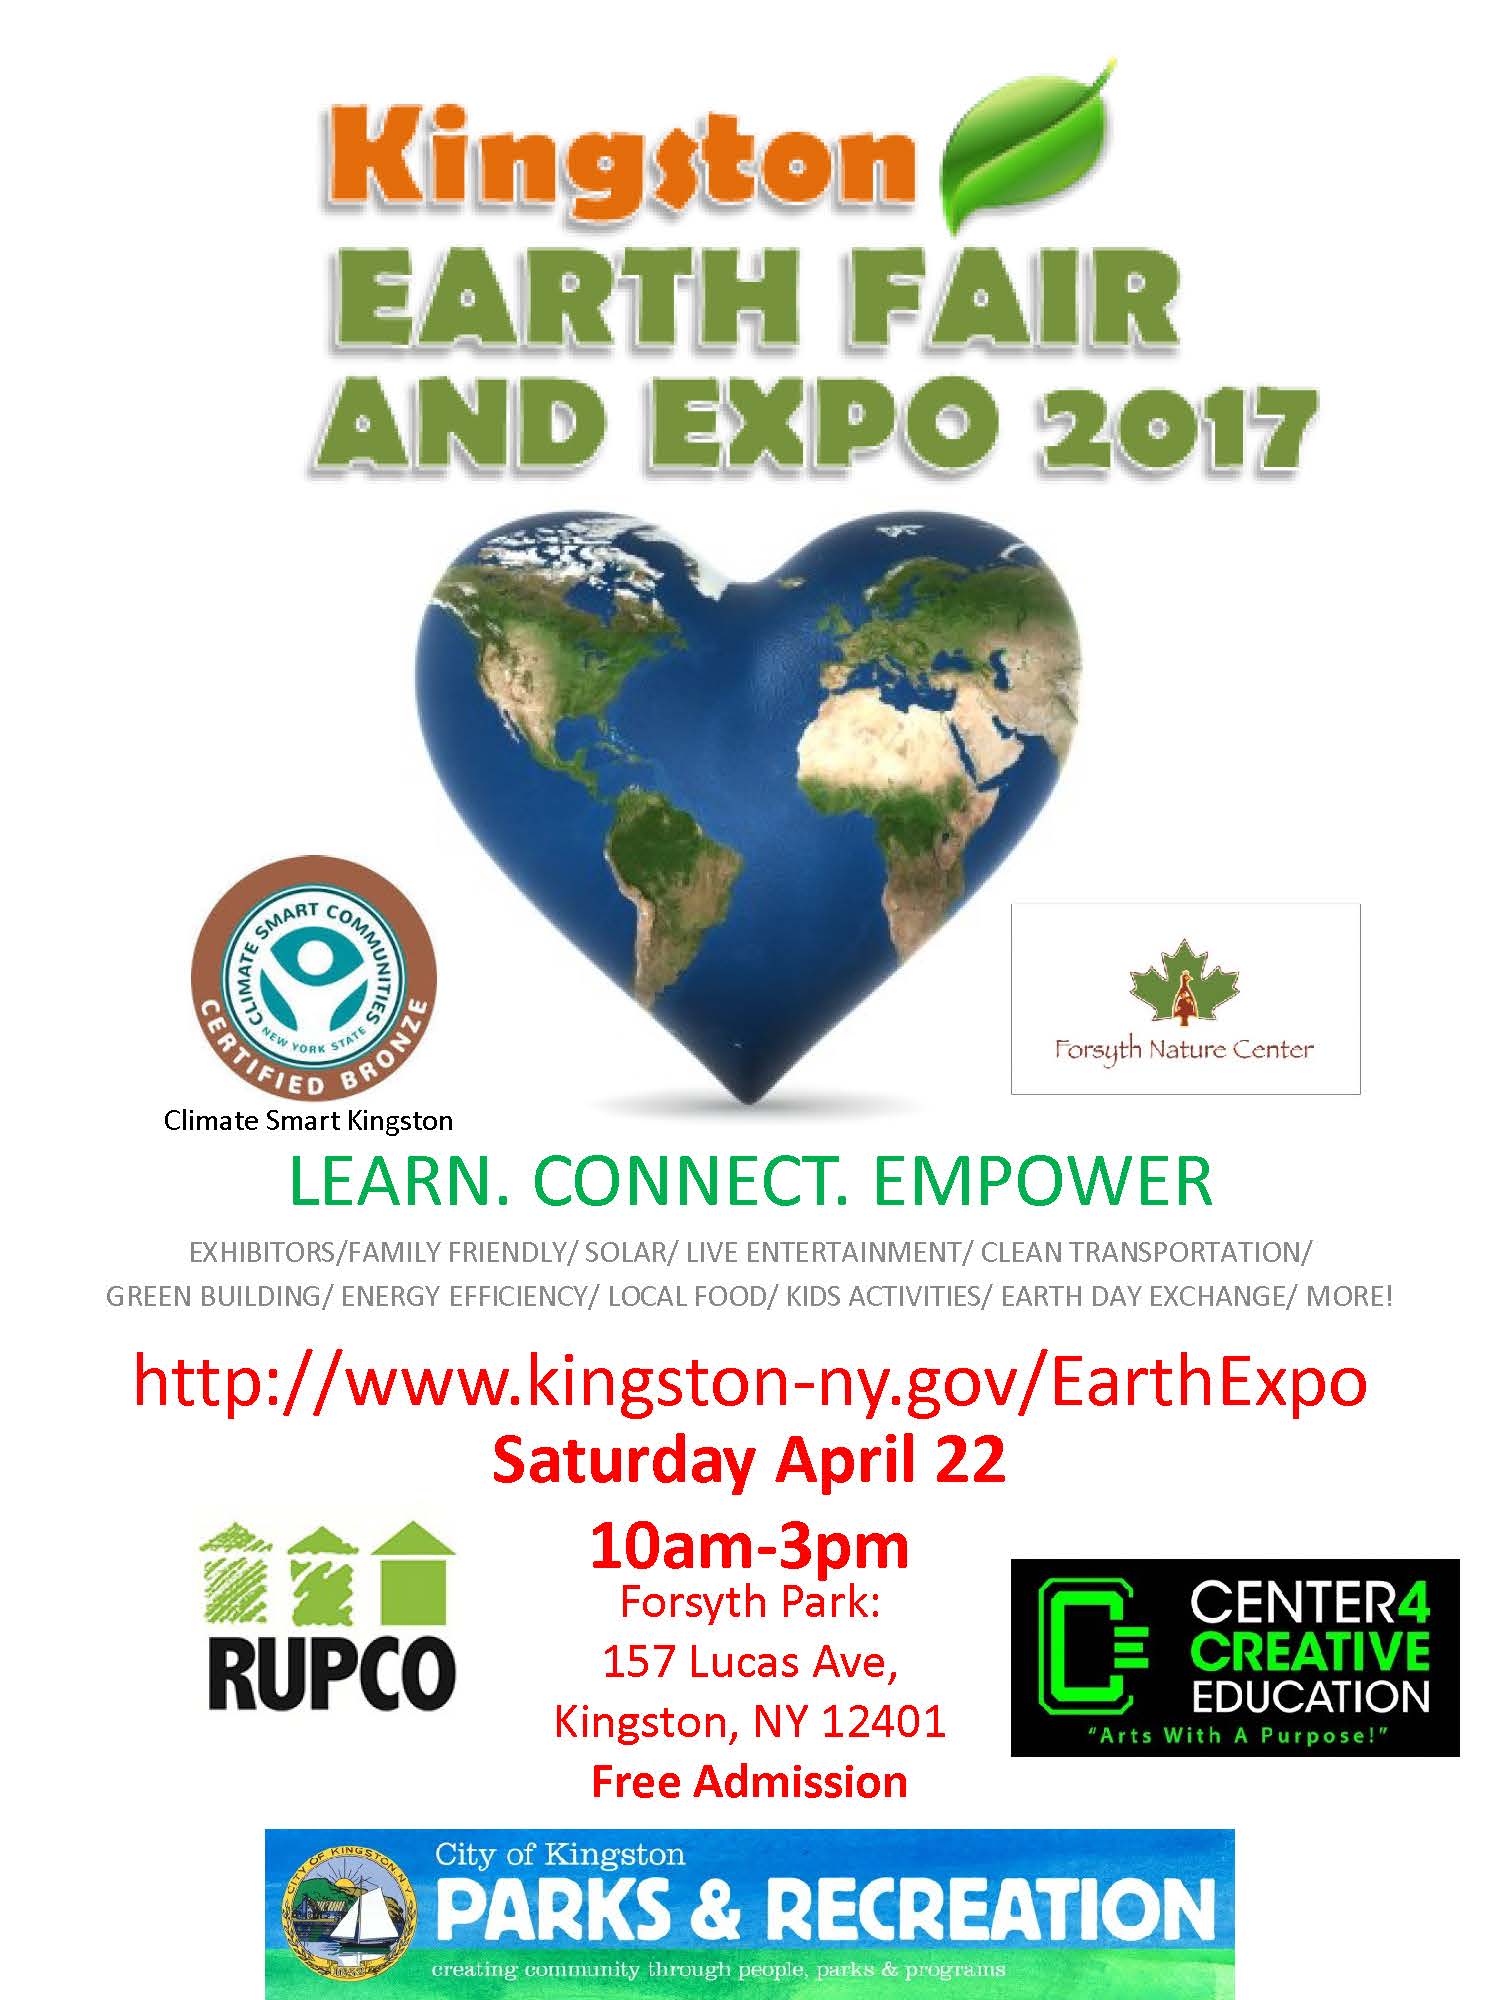 Kingston Earth Fair and Expo